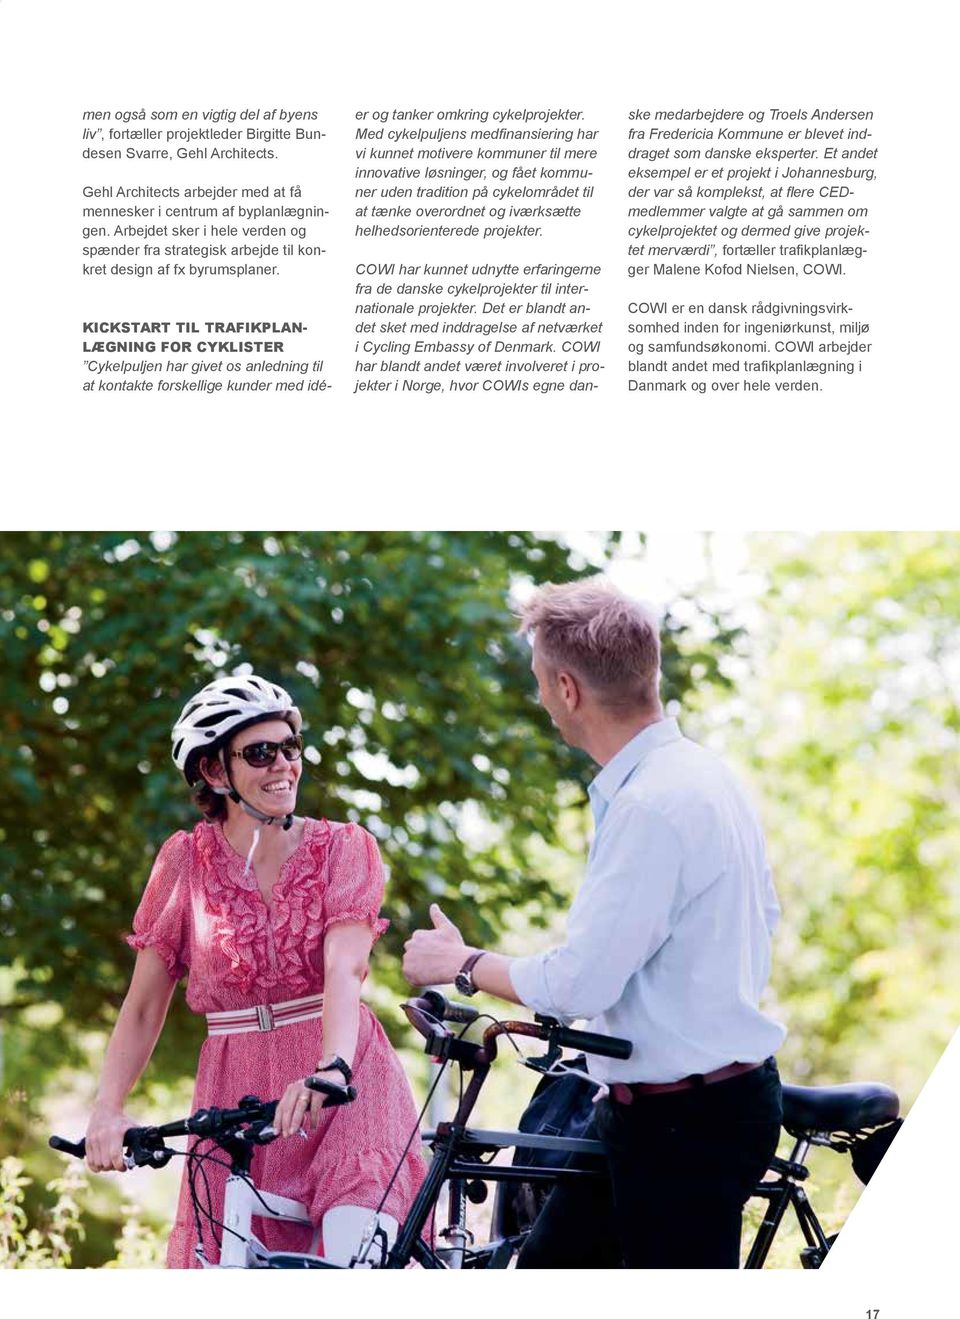 Kickstart til trafikplanlægning for cyklister Cykelpuljen har givet os anledning til at kontakte forskellige kunder med idéer og tanker omkring cykelprojekter.